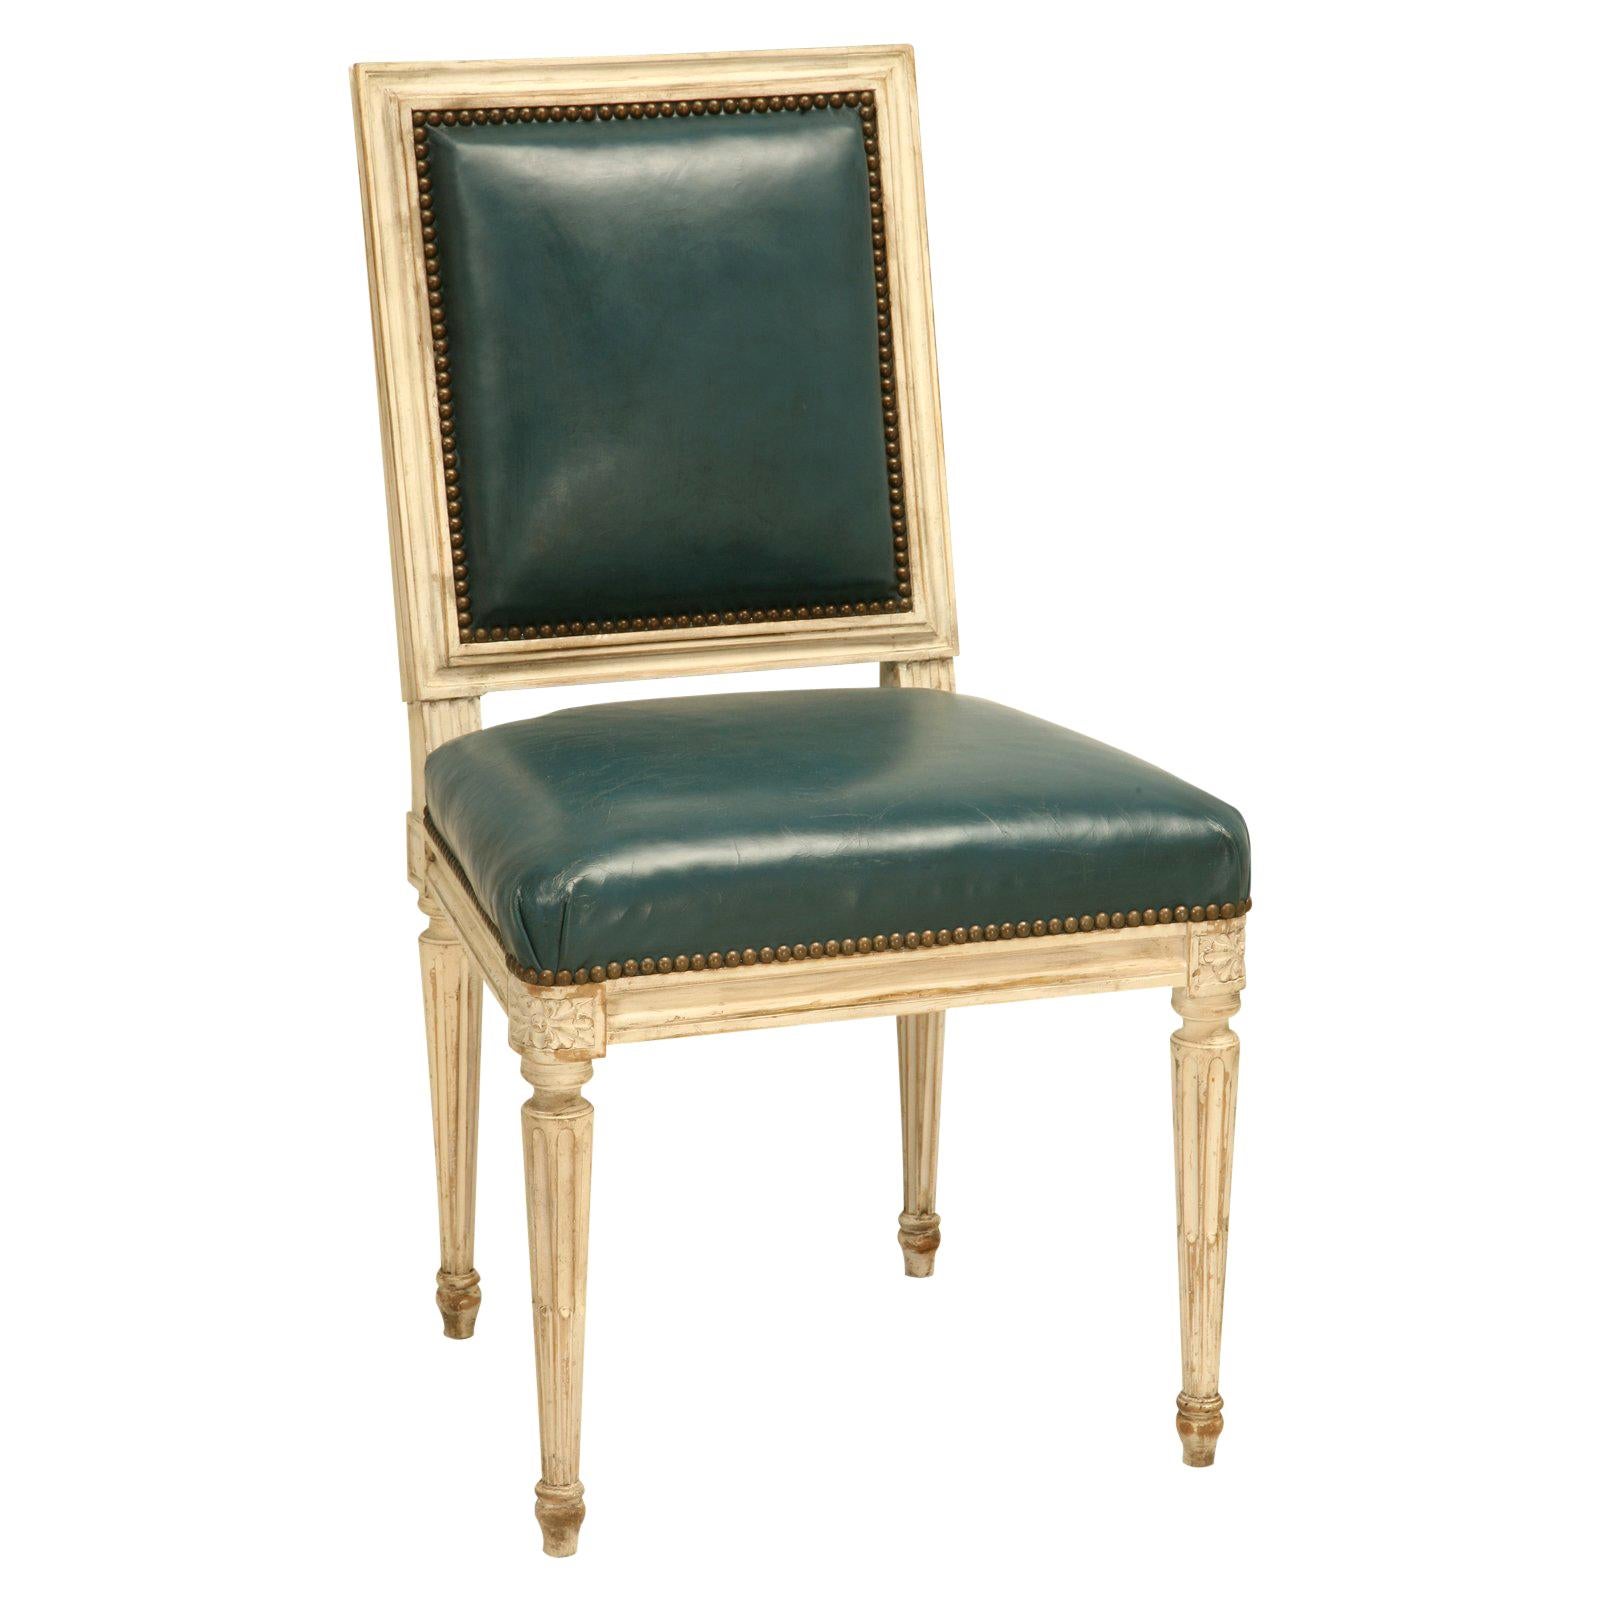 Louis XVI-Stil Beistellstühle, handgeschnitzt, Auswahl an Oberflächen, Sessel verfügbar